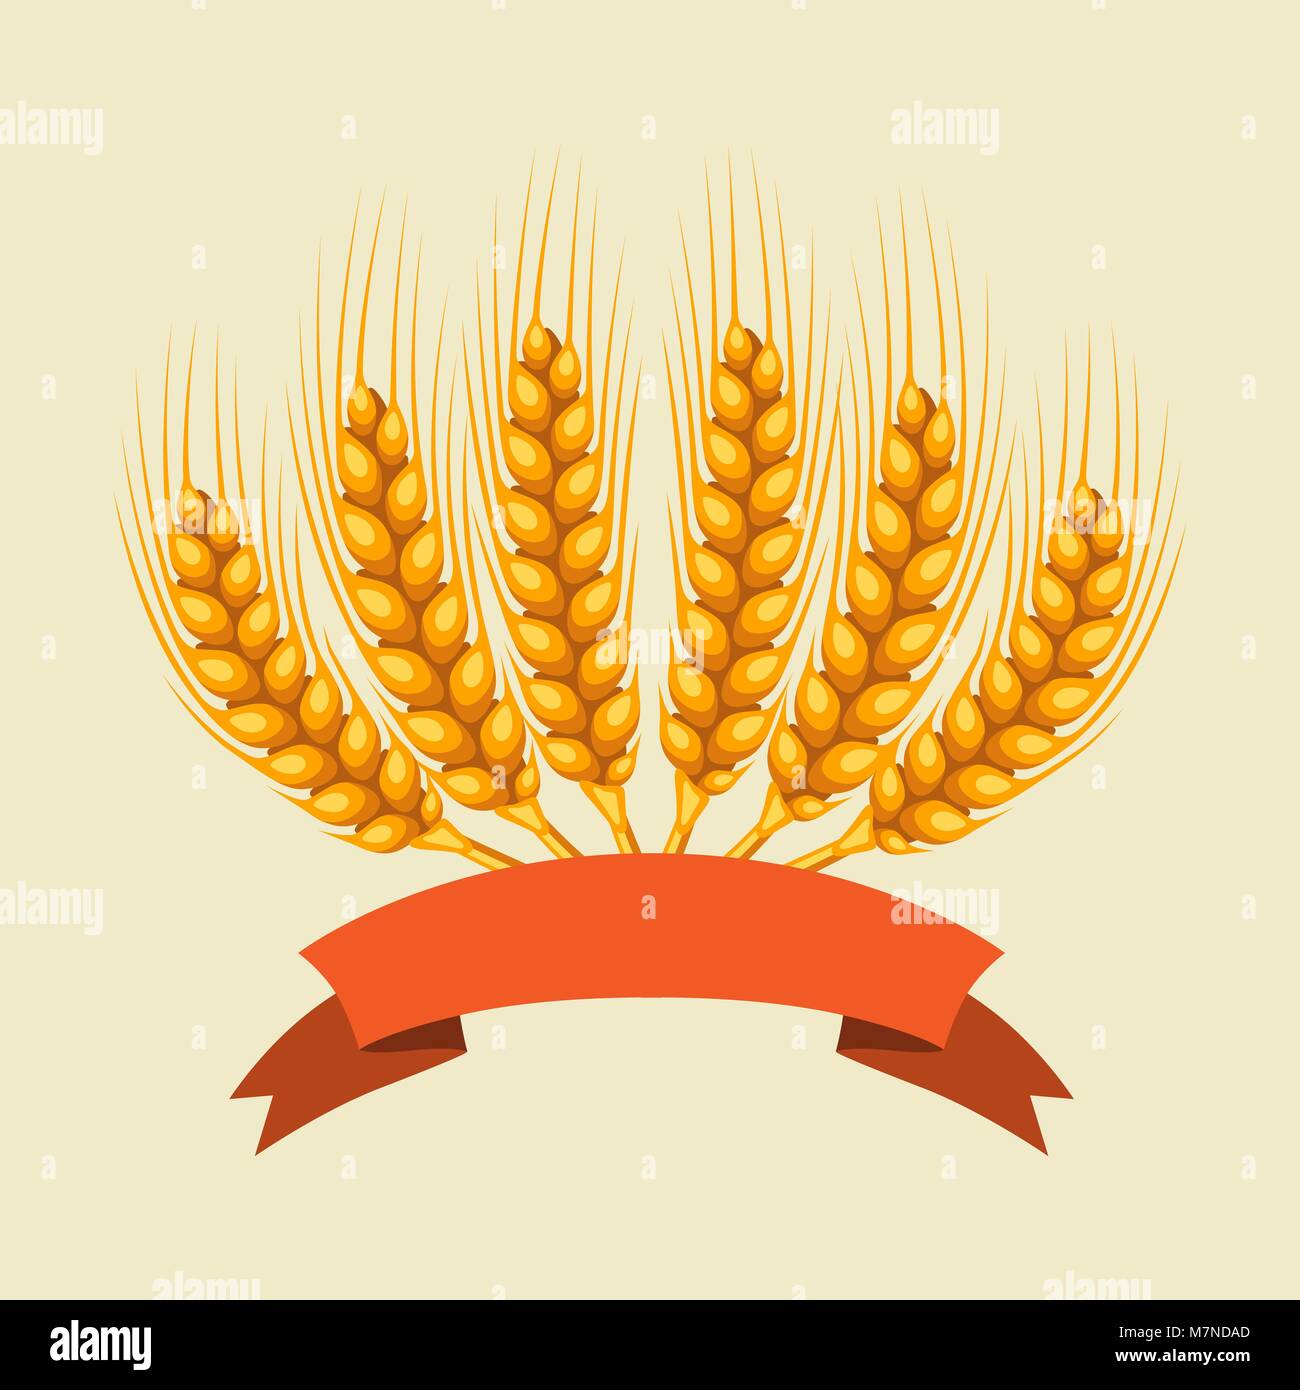 Bündel von Weizen, Gerste oder Roggen Ohren. Landwirtschaftliche Bild für die Dekoration Brot Verpackung, Bier Etiketten, Broschüren und Werbung Broschüren Stock Vektor